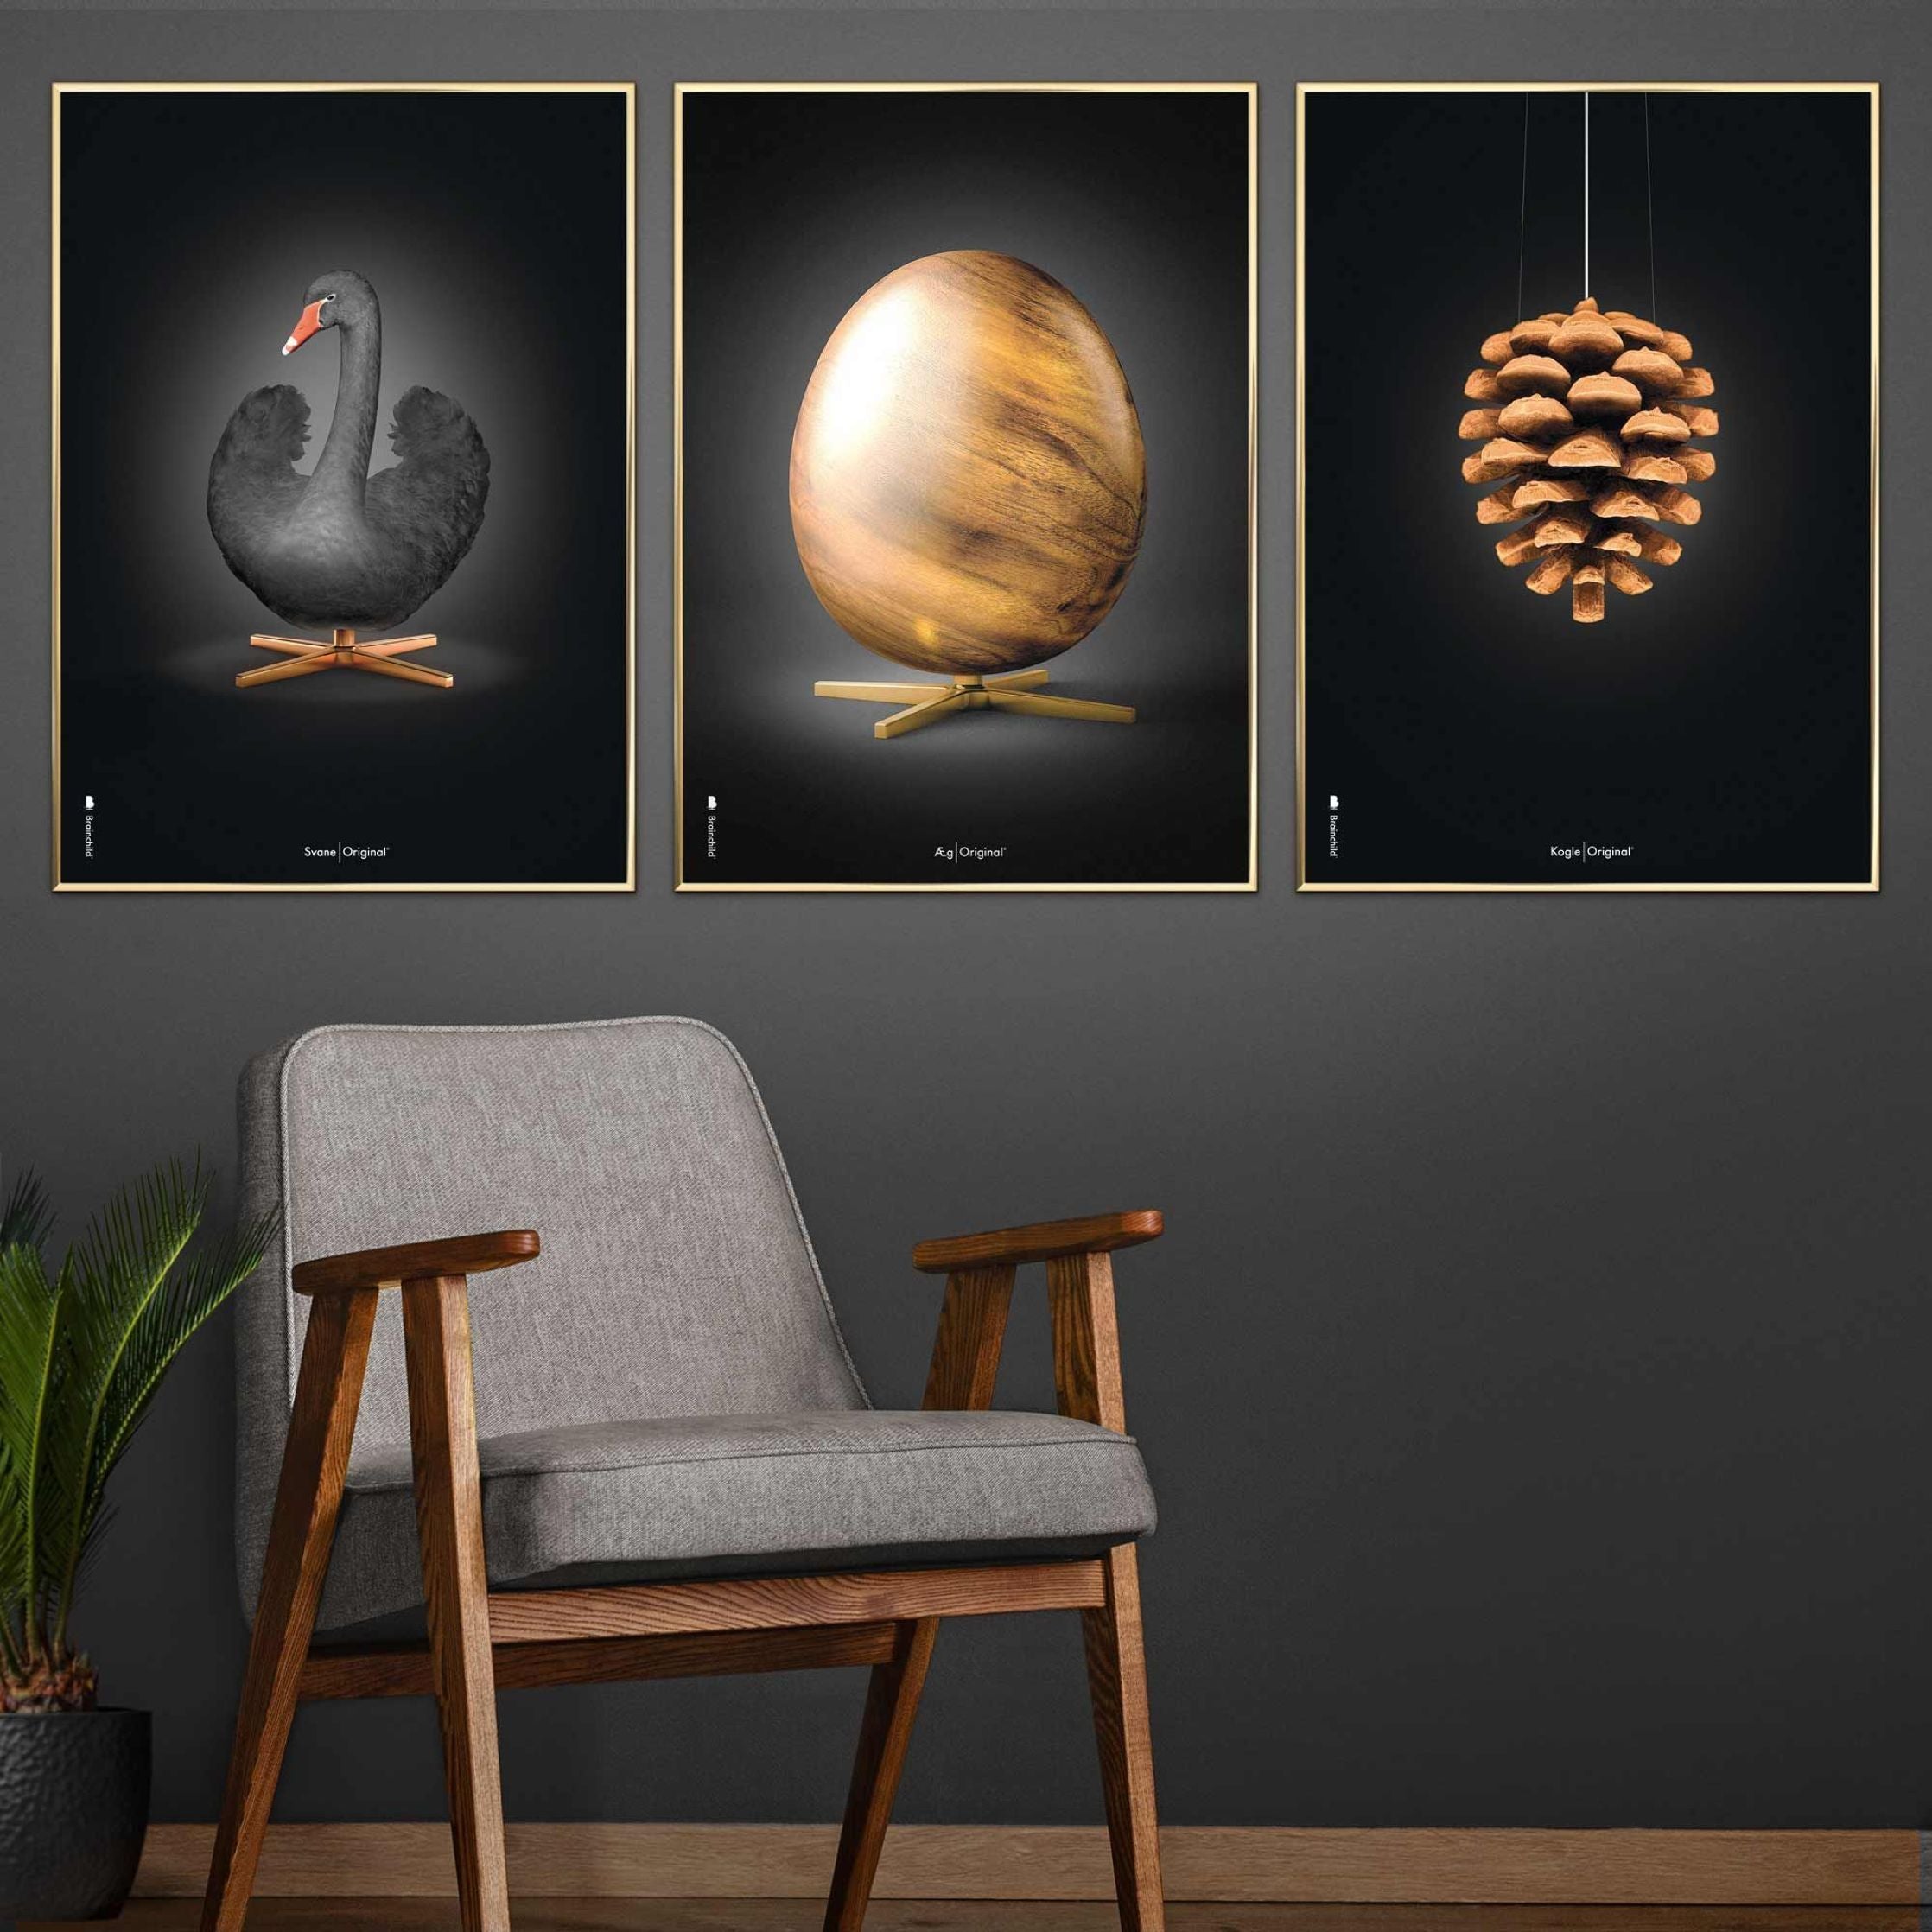 Brainchild Egg Figures Poster, Frame Made Of Light Wood 70x100 Cm, Black